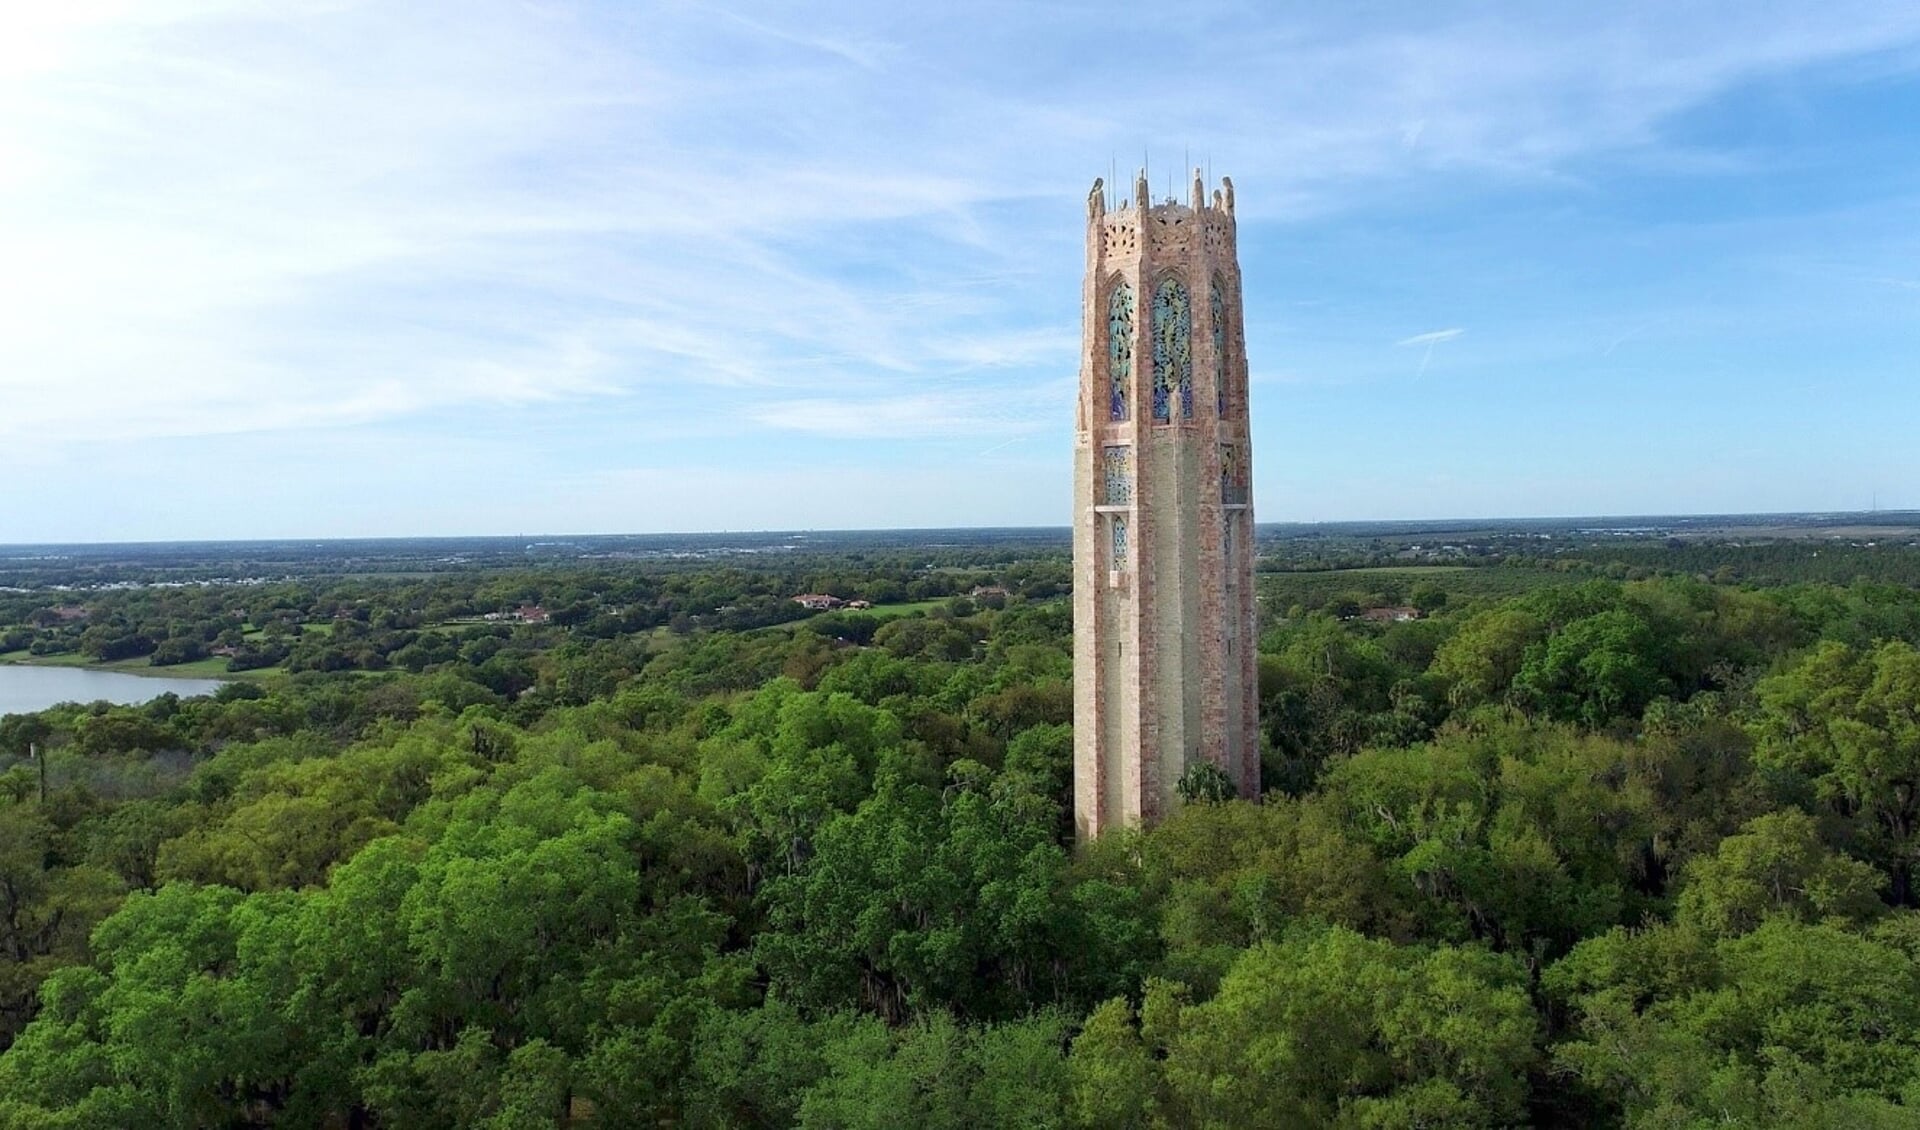 • The Bok Tower of Singing Tower in Lake Wales, Florida (Verenigde Staten).